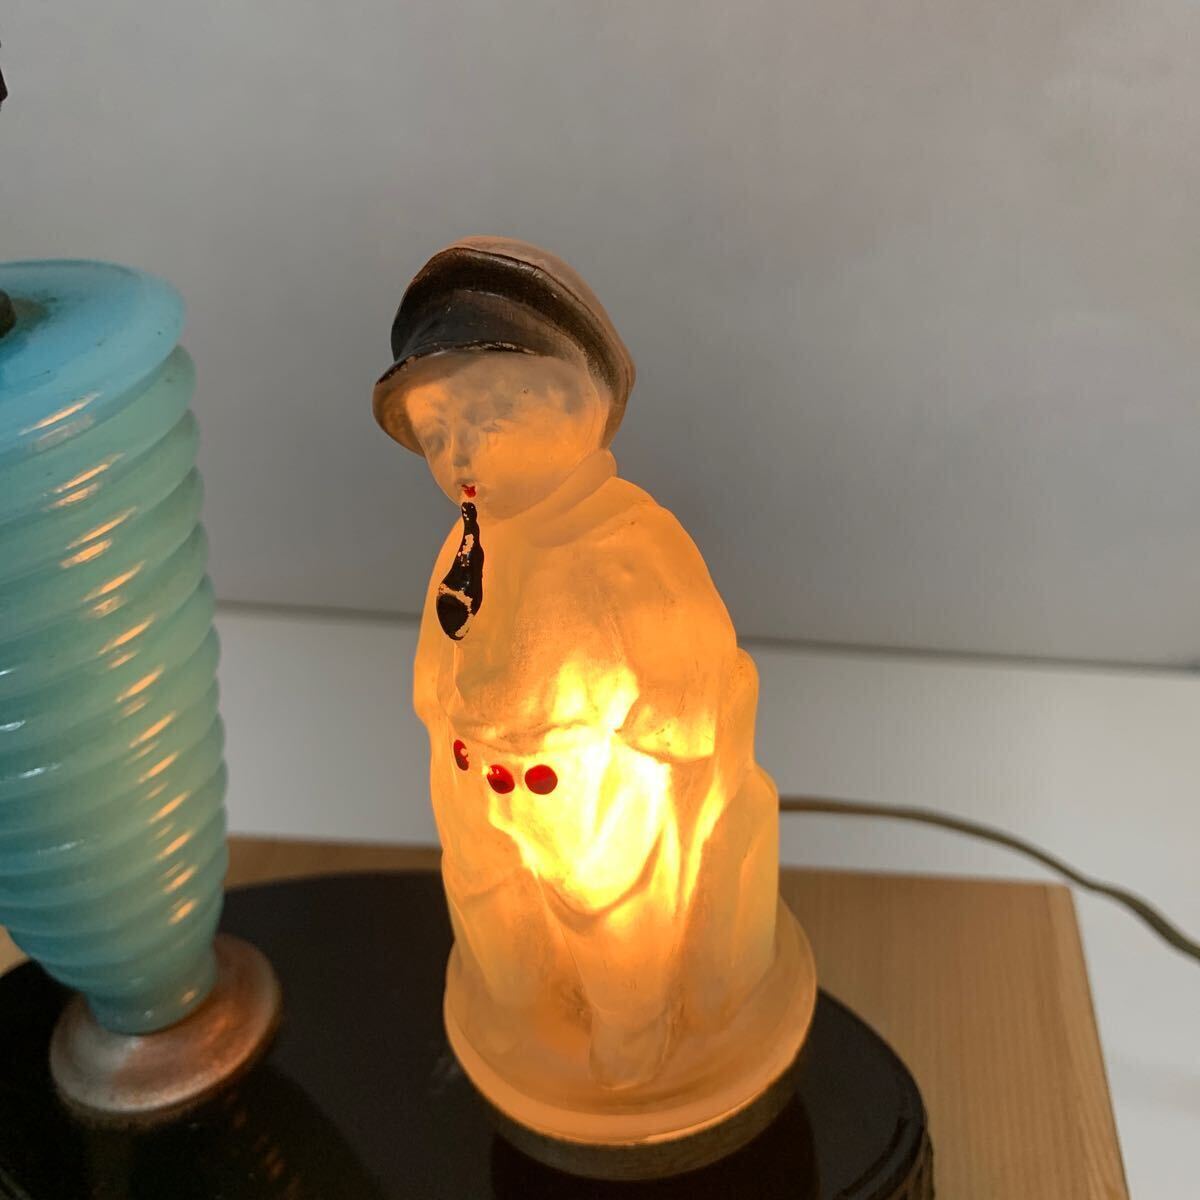  Showa Retro desk lamp electric stand 